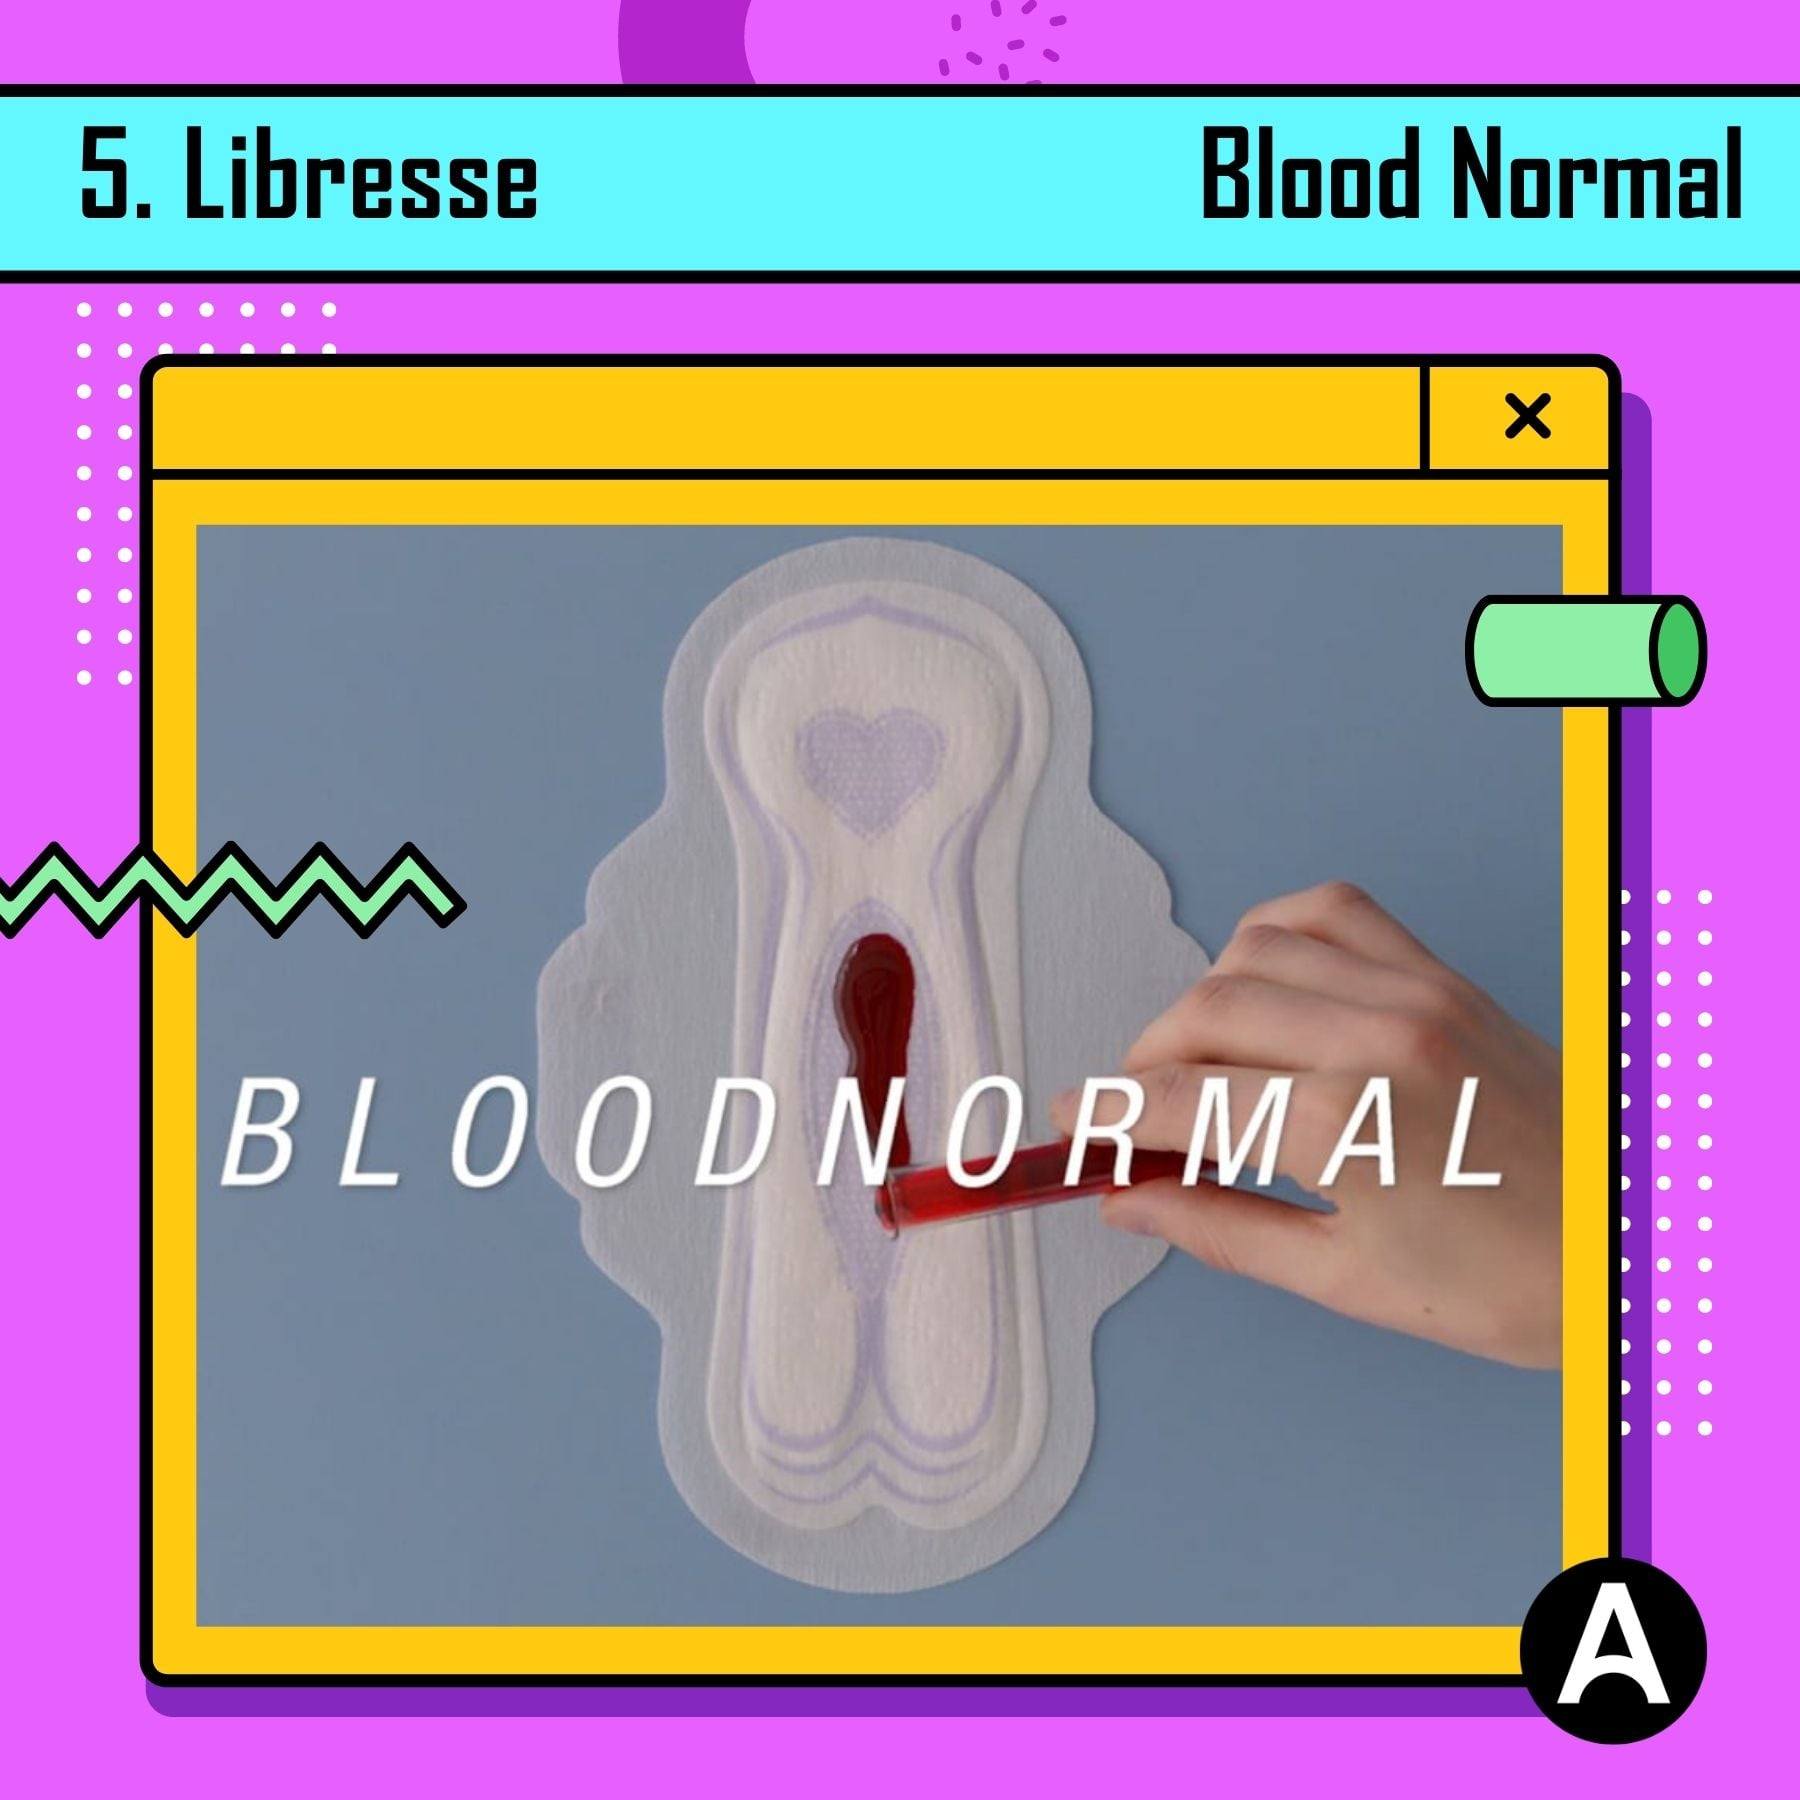 Libresse, “Blood Normal”